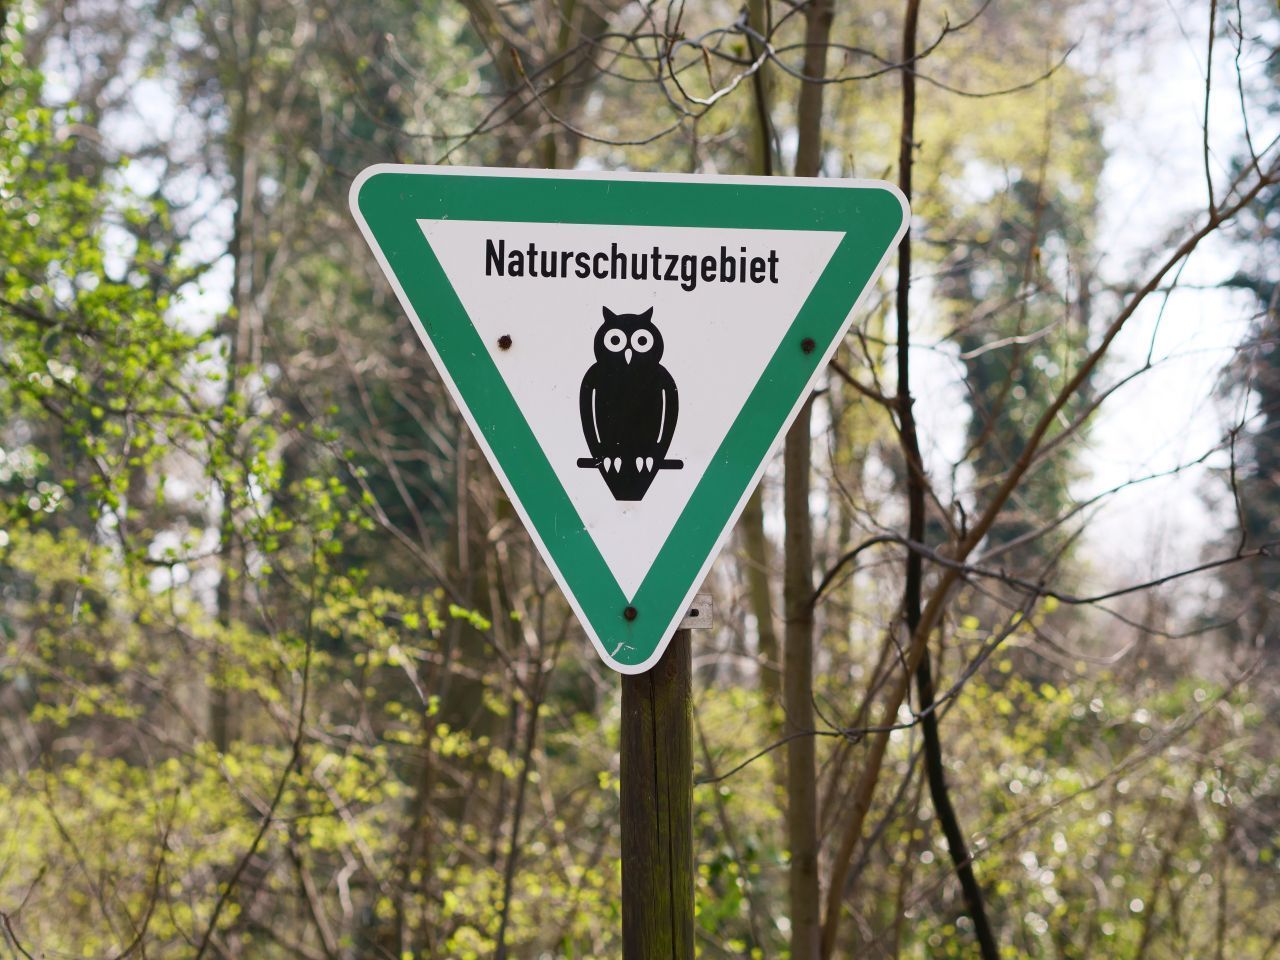 In Berlin und Niedersachsen ist in dem grünen, dreieckigen Schild eine Eule abgebildet.